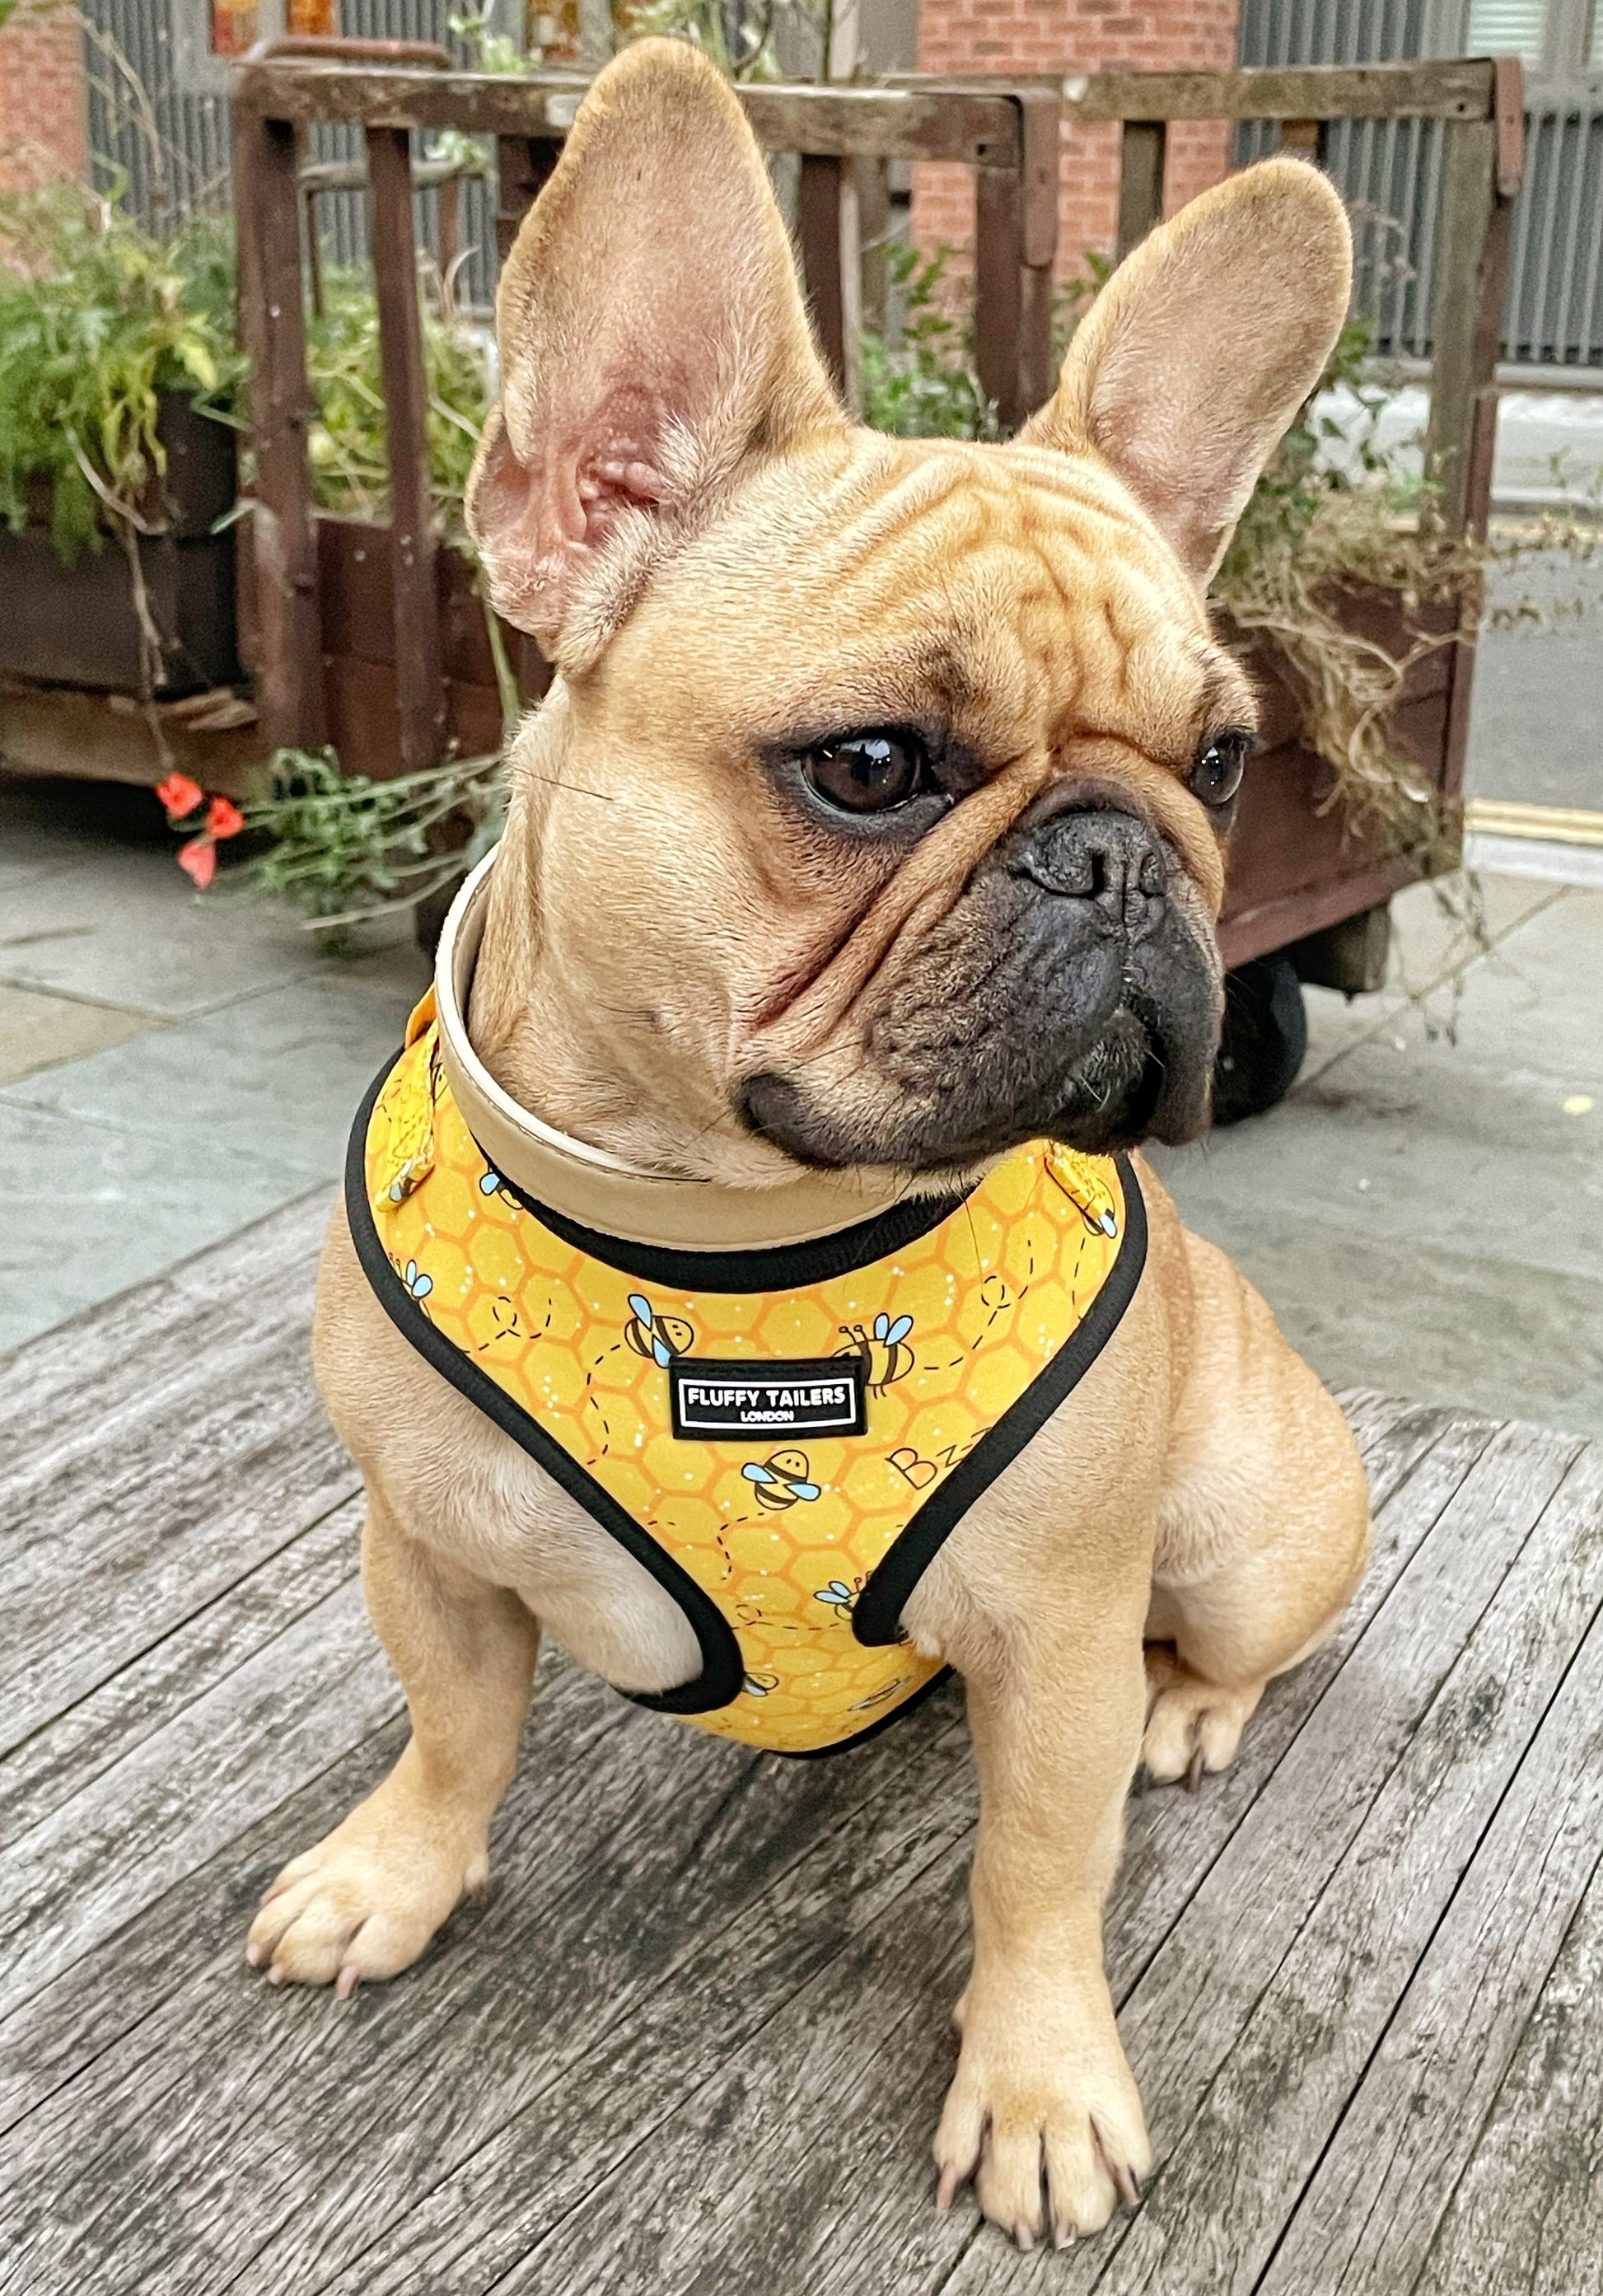 Cute Flower French Bulldog Harness Leash & Collar Set